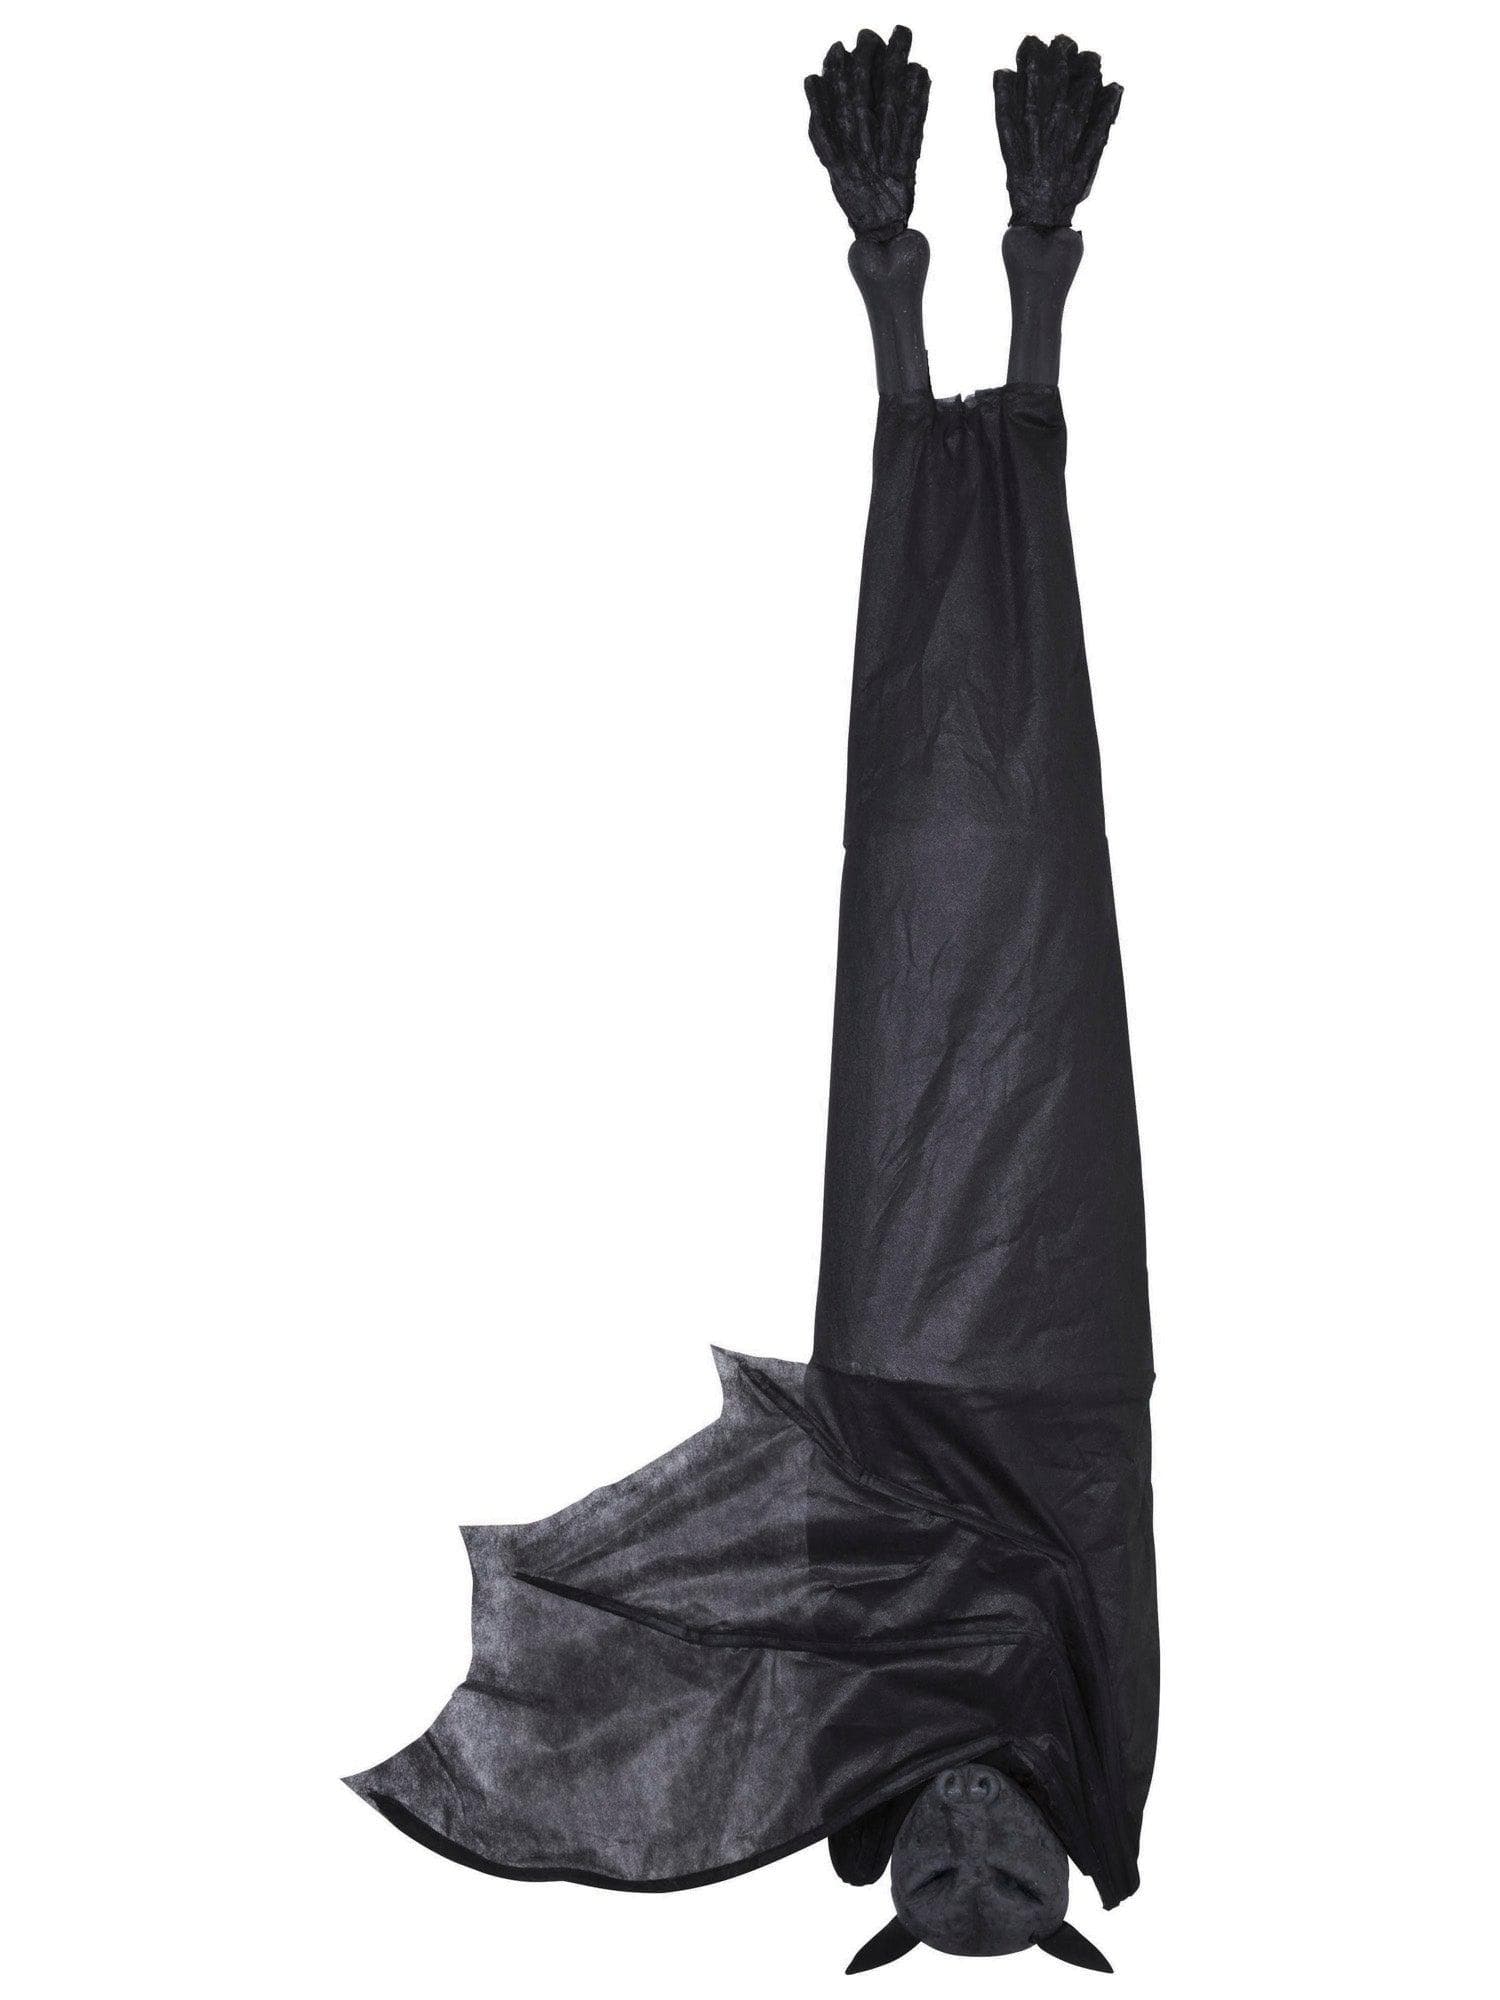 5 Foot Black Bat Hanging Prop - costumes.com